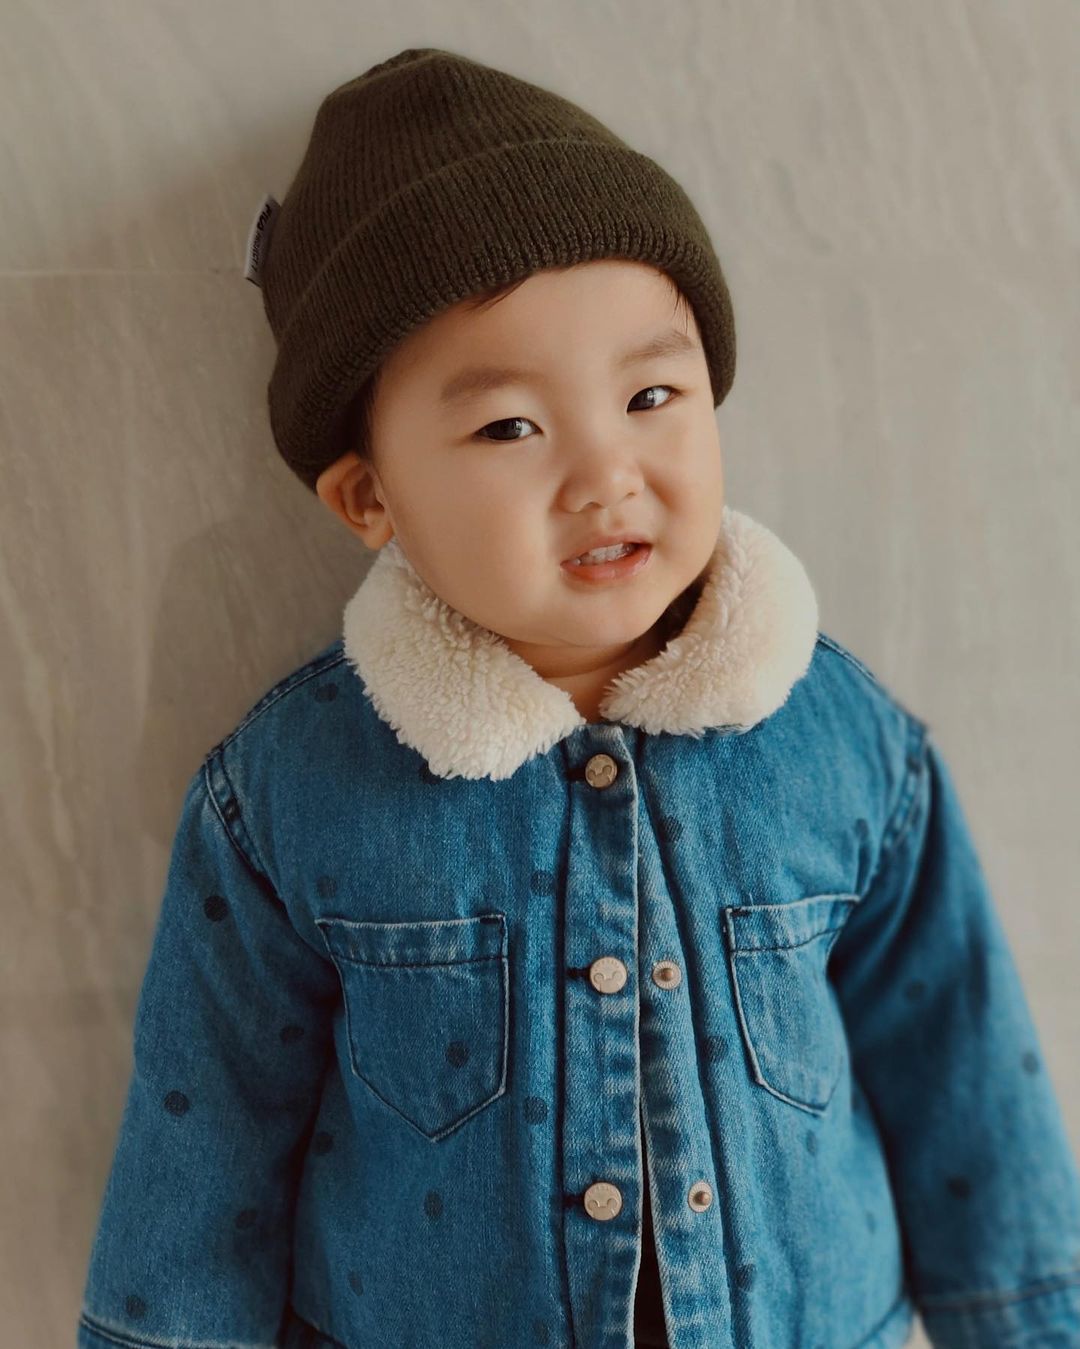 Con trai Hòa Minzy như sao nhí Hàn Quốc trong bộ ảnh 'cậu bé ấm áp' - Ảnh 6